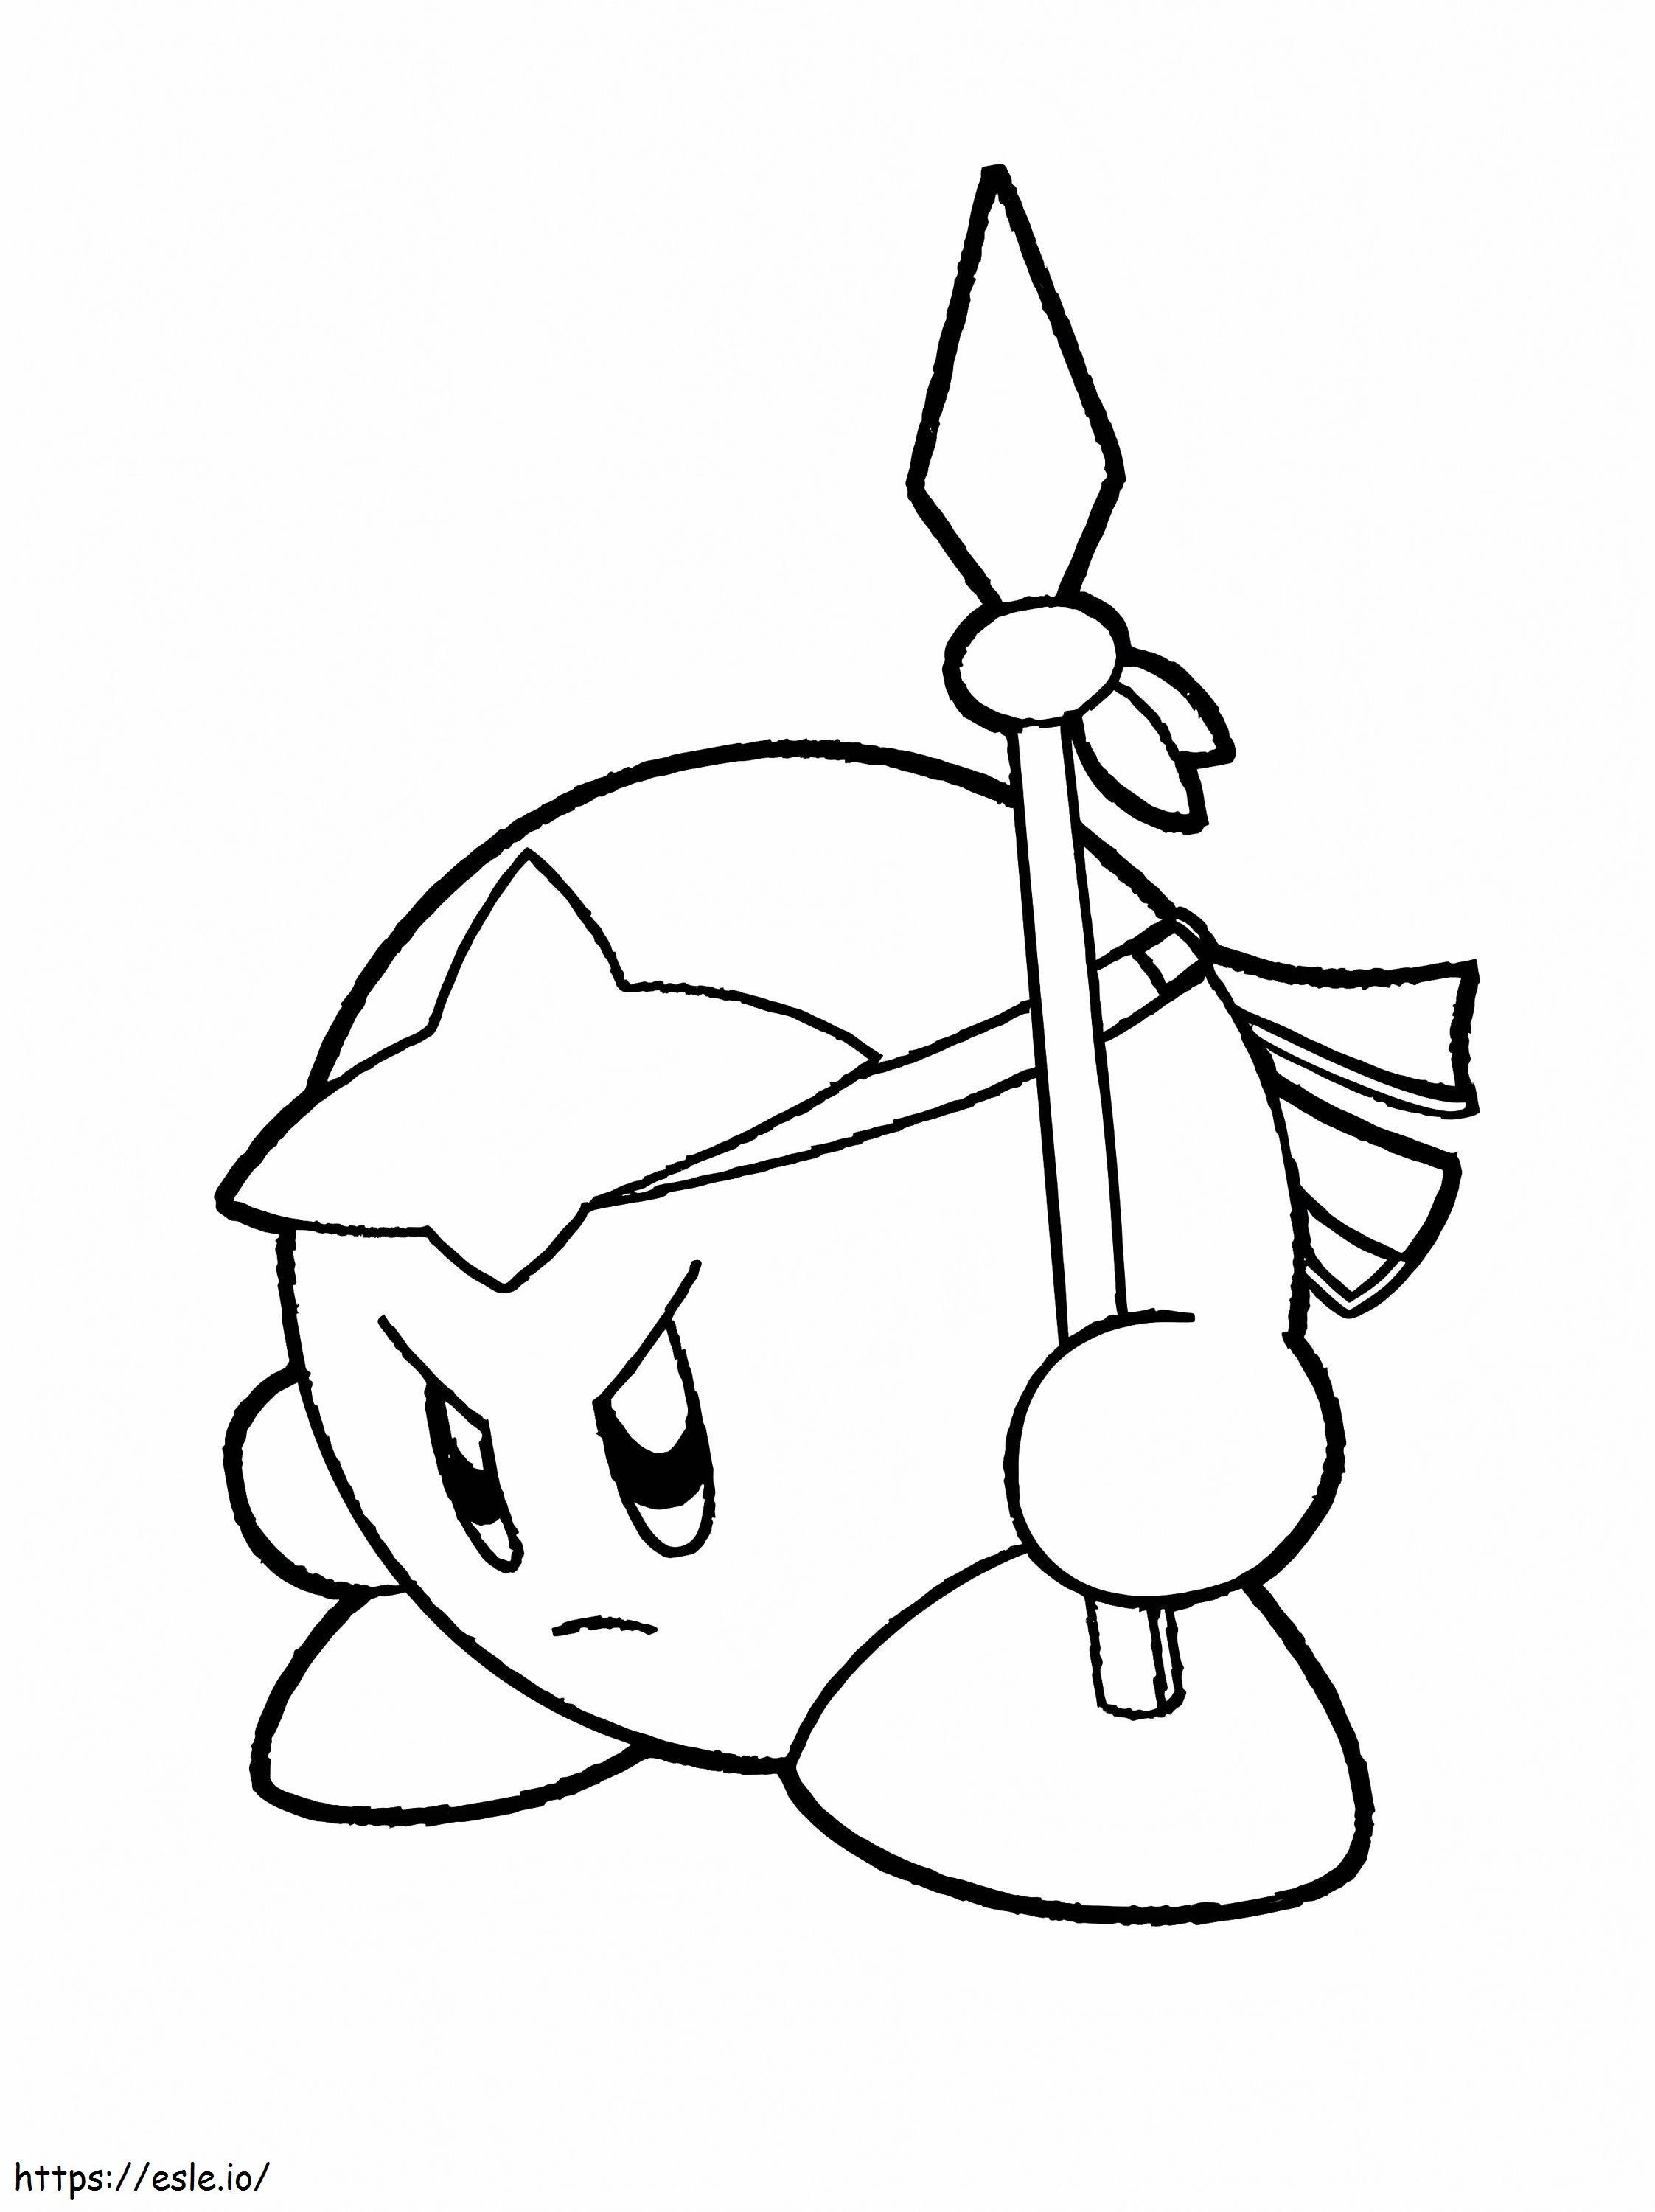 Kirby el luchador para colorear